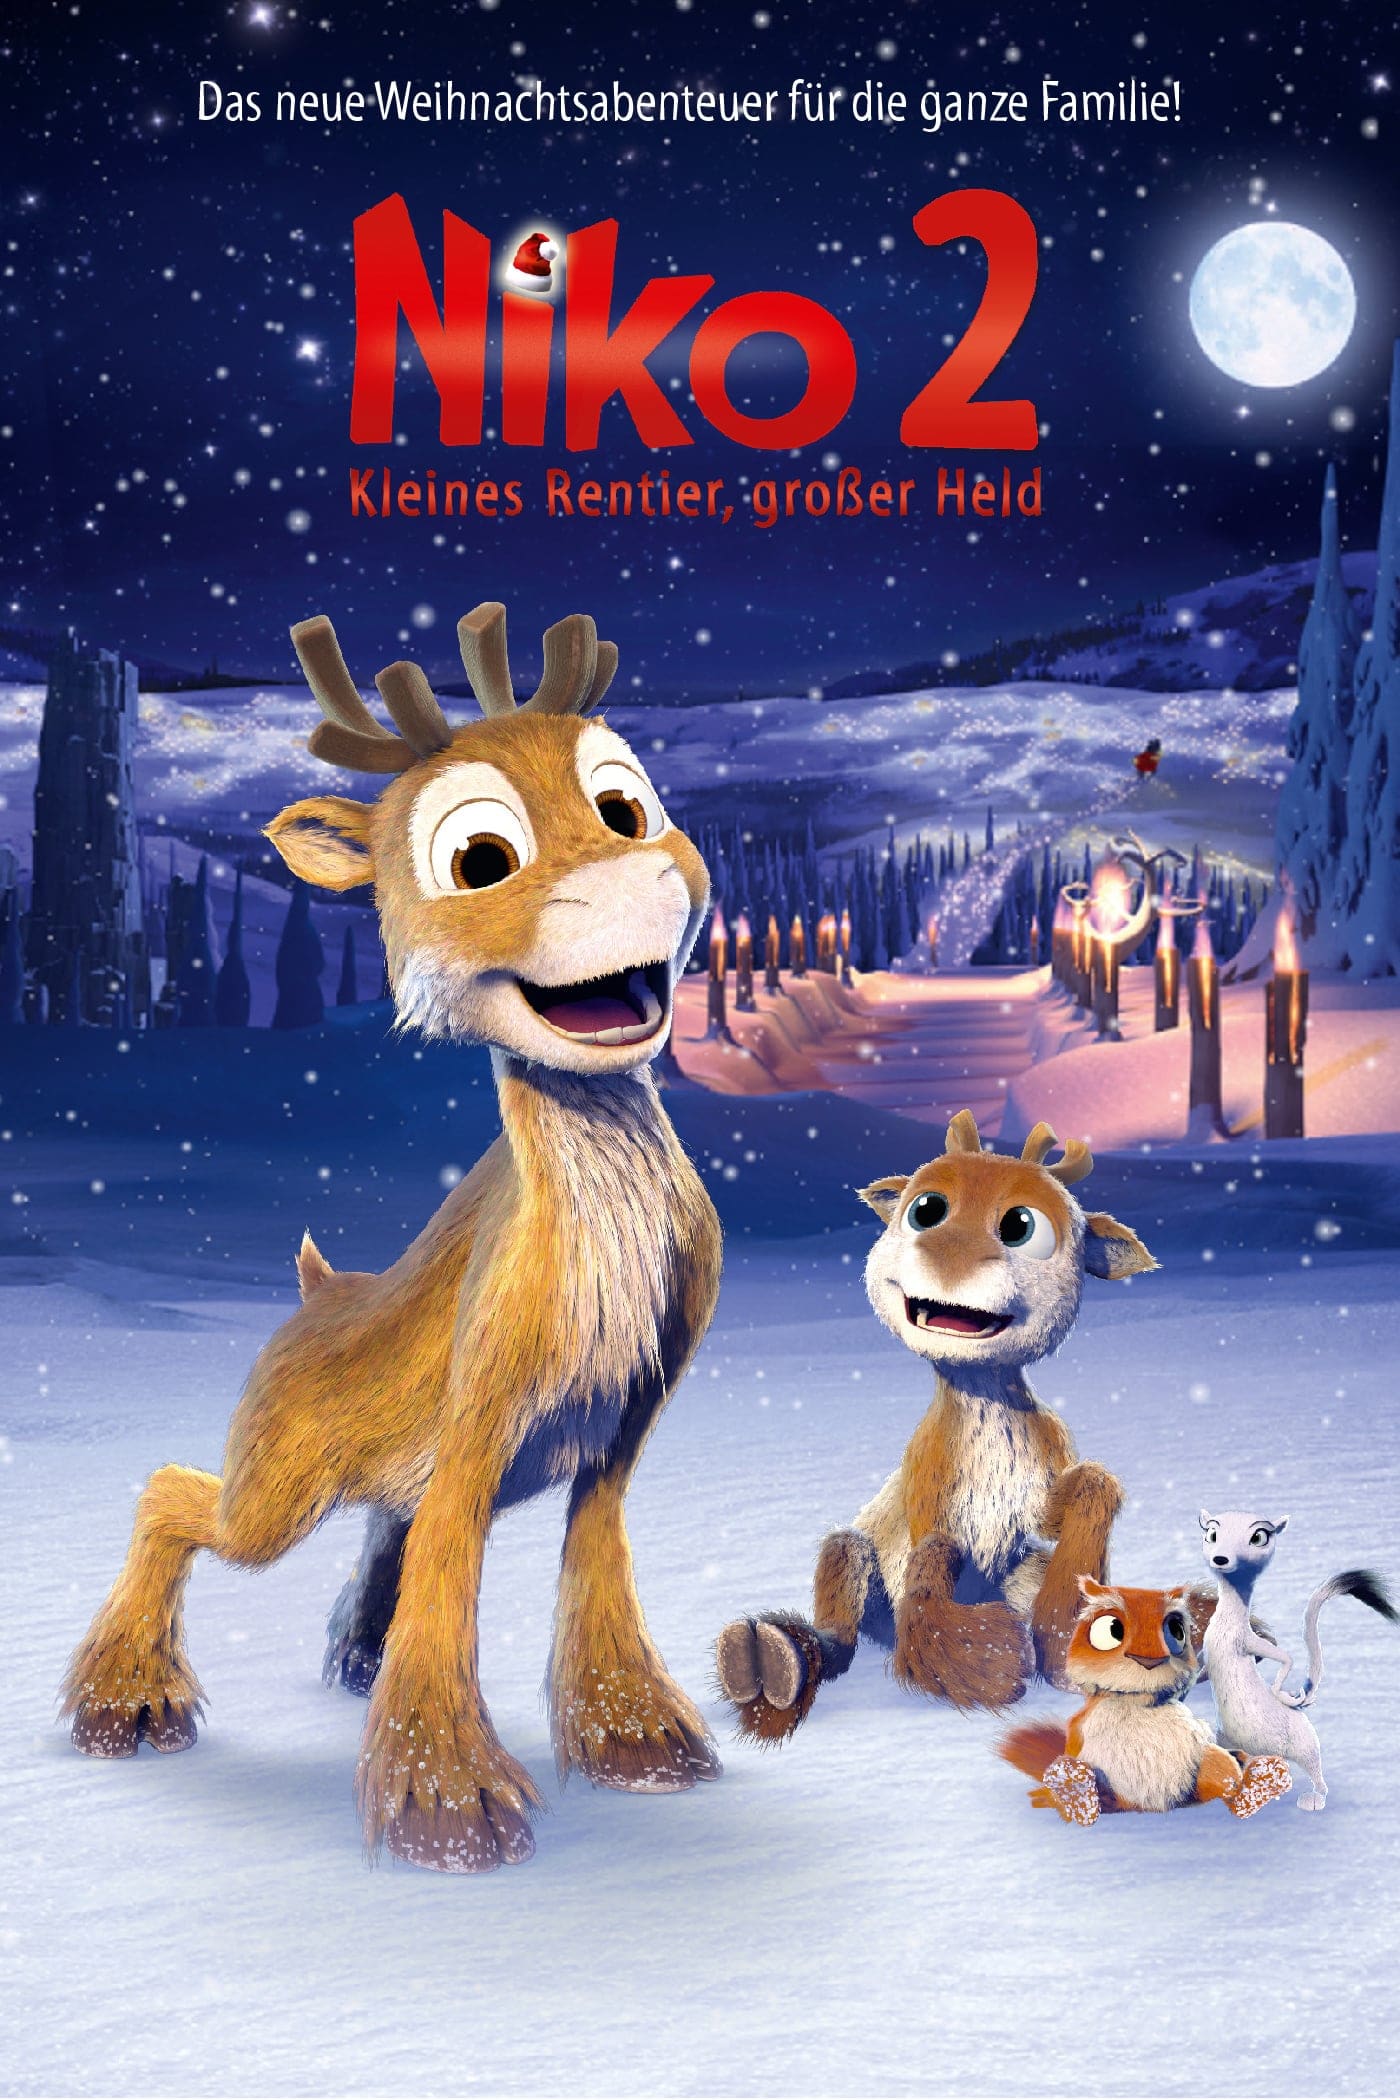 Plakat von "Niko 2 - Kleines Rentier, großer Held"